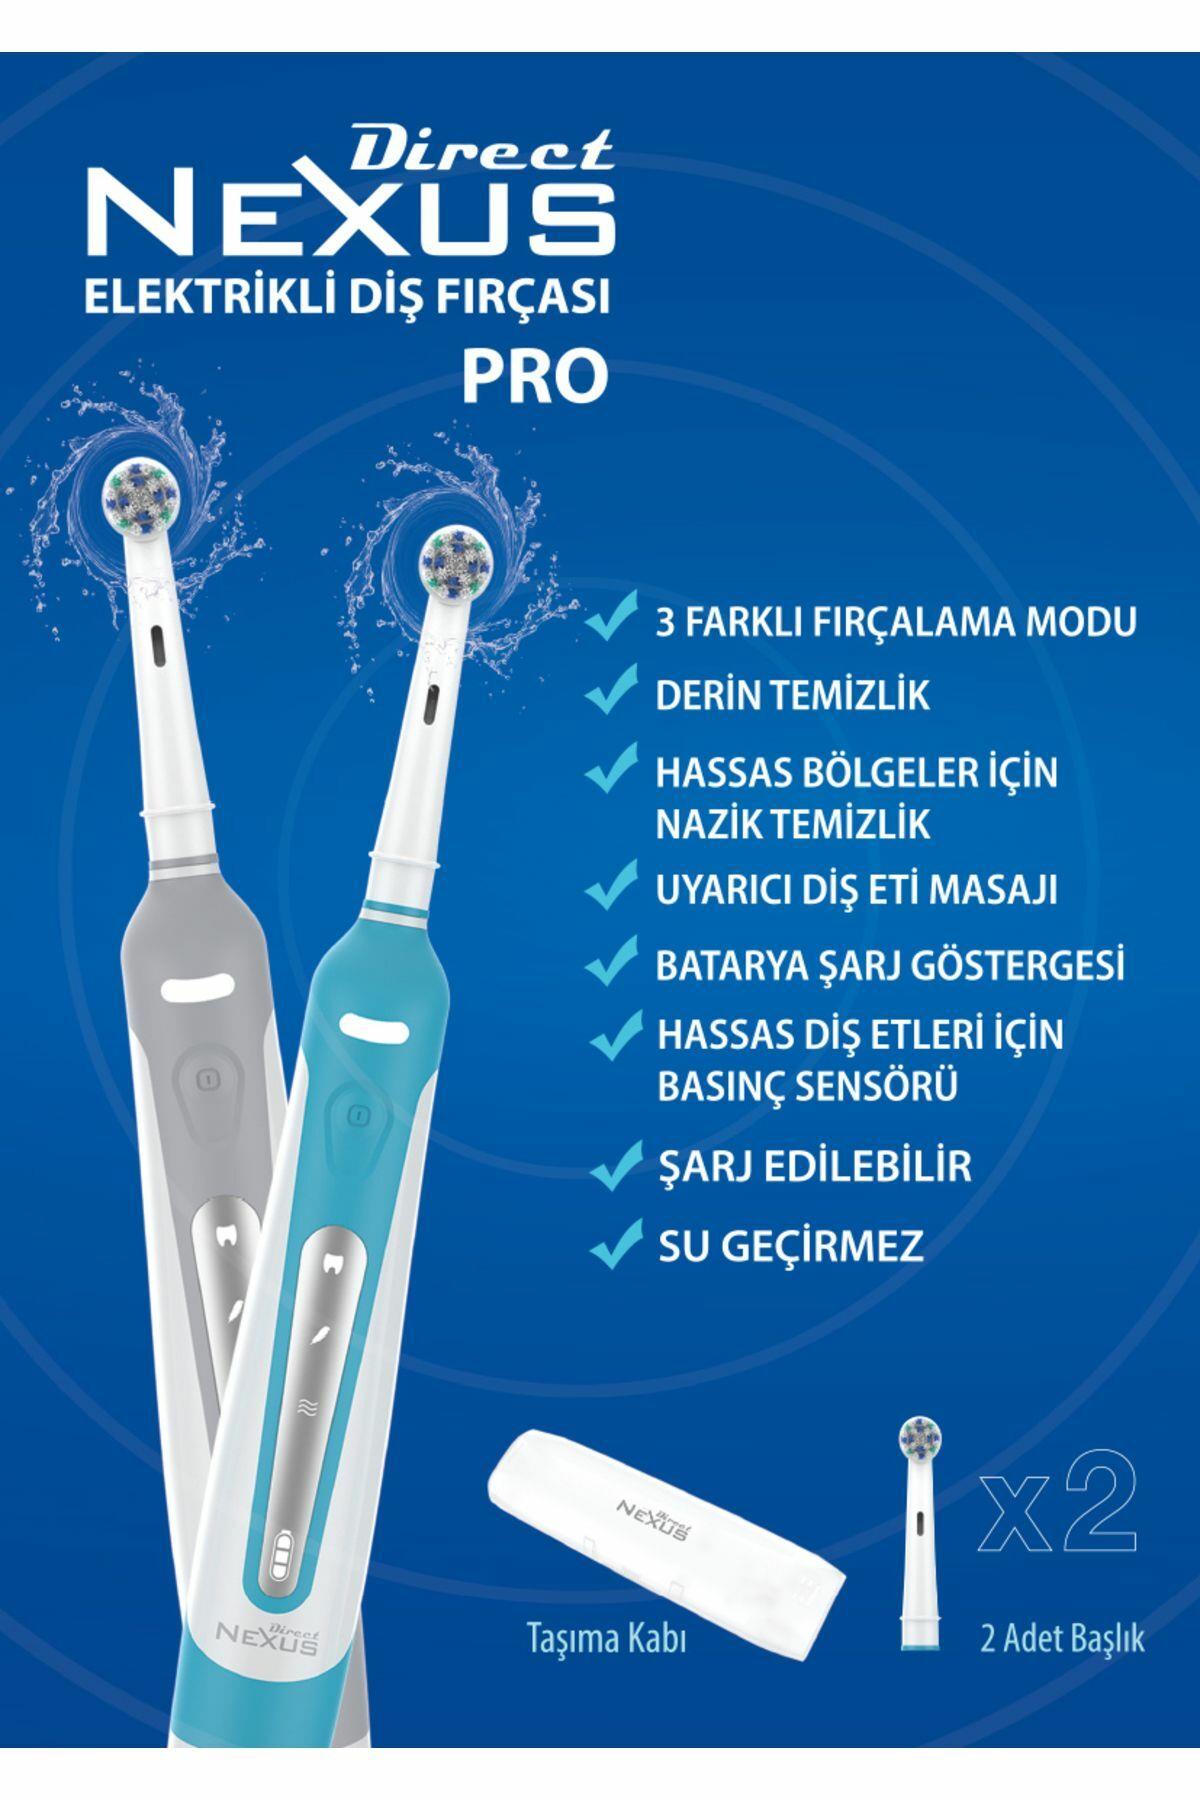 Direct Nexus Elektrikli Diş Fırçası Pro - Profesyonel Diş Bakımı İçin Güçlü  ve Etkili